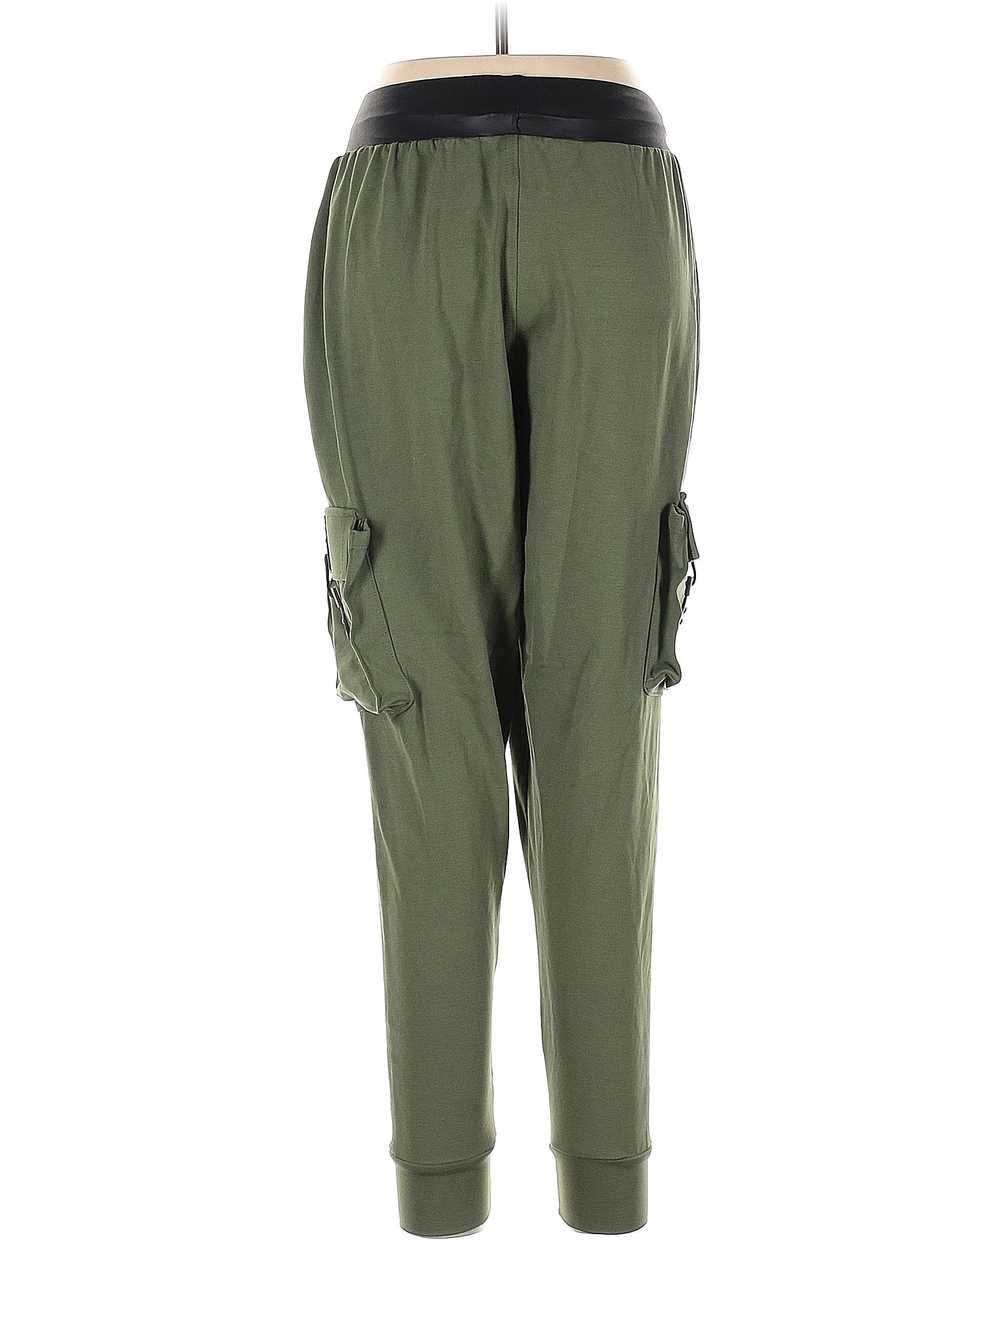 Assorted Brands Women Green Cargo Pants 10 - image 2